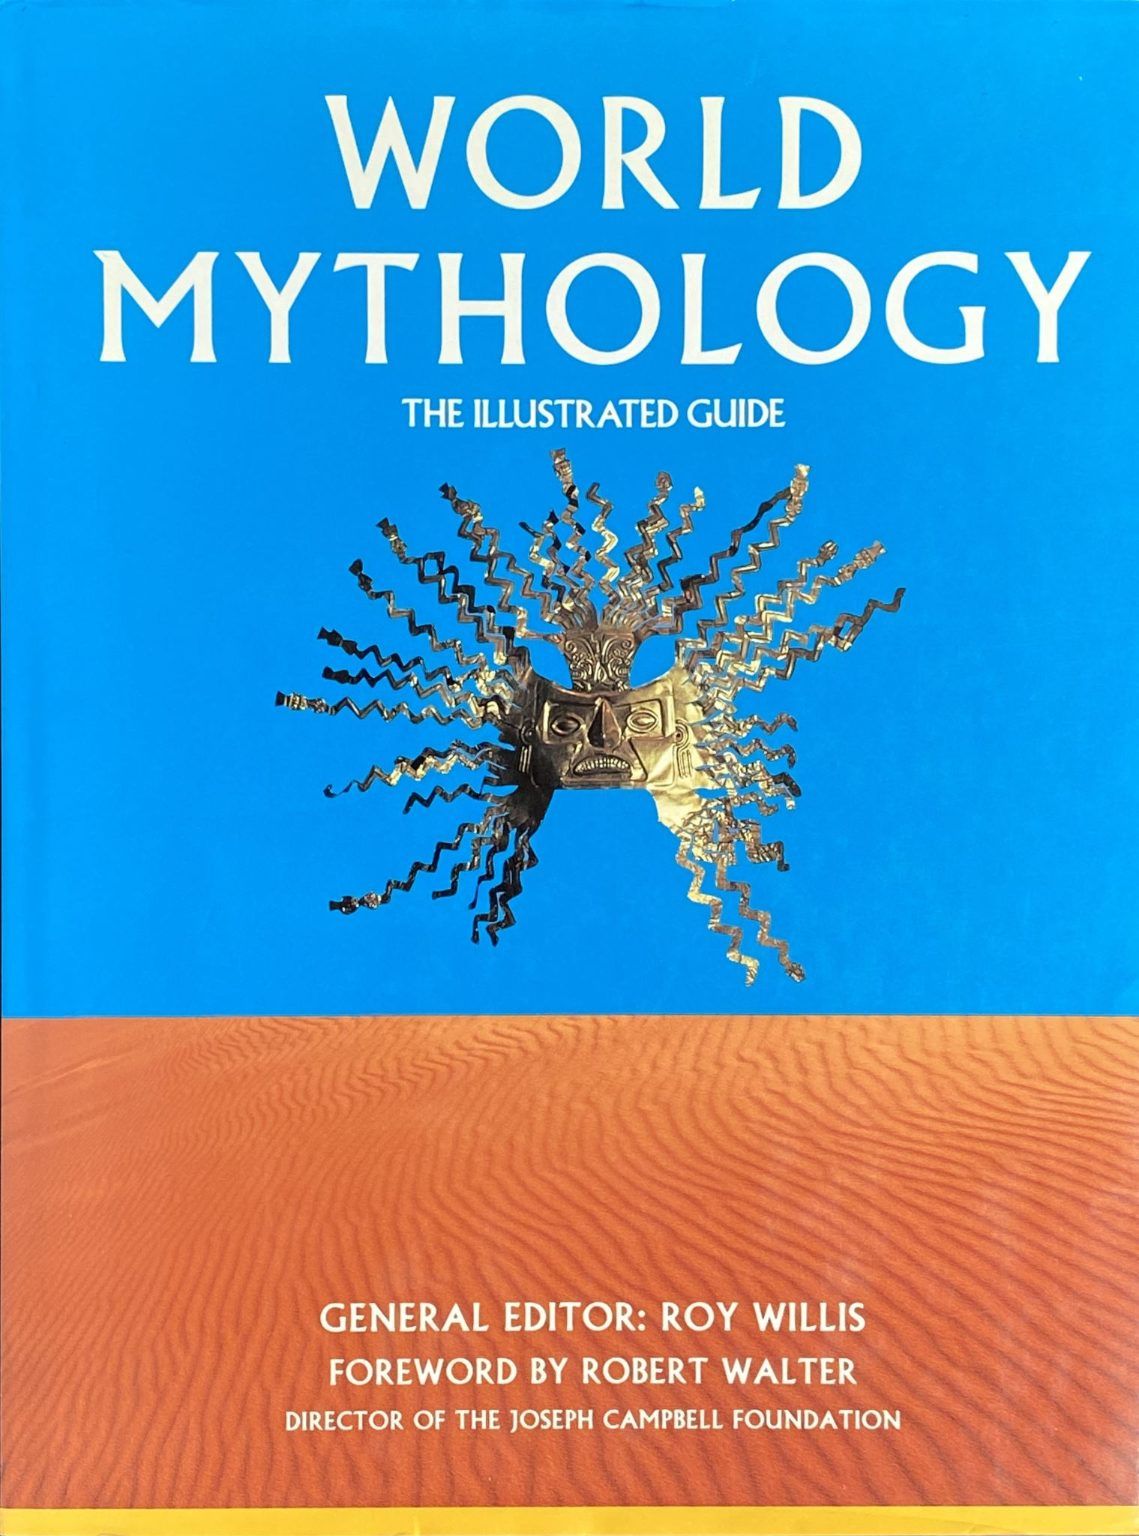 WORLD MYTHOLOGY: The Illustrated Guide